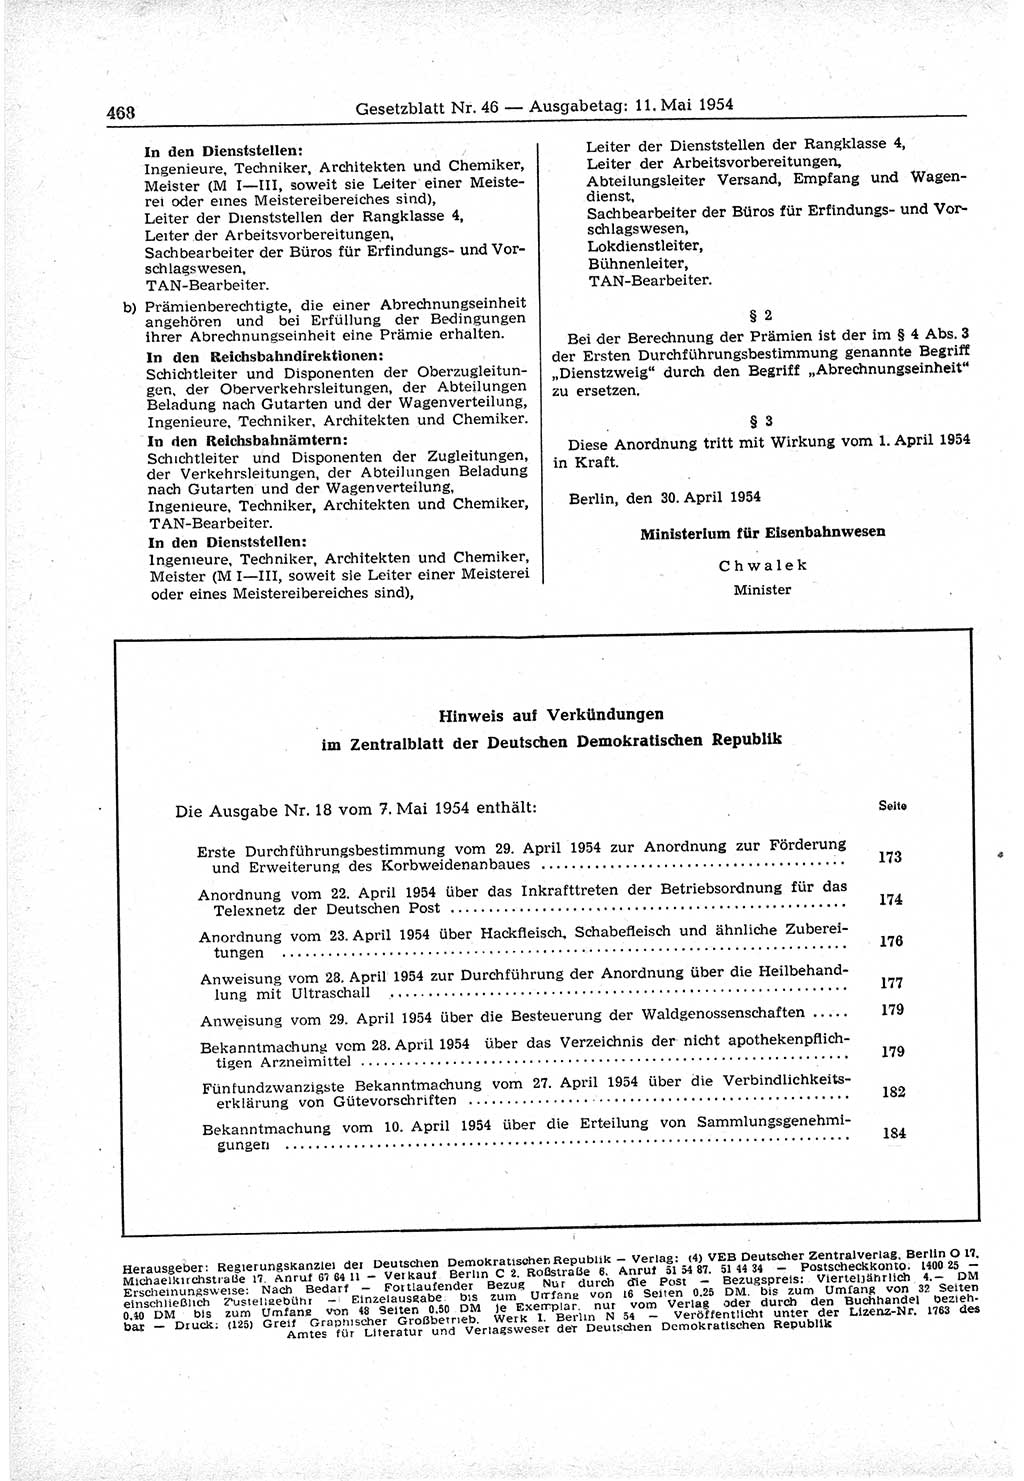 Gesetzblatt (GBl.) der Deutschen Demokratischen Republik (DDR) 1954, Seite 468 (GBl. DDR 1954, S. 468)